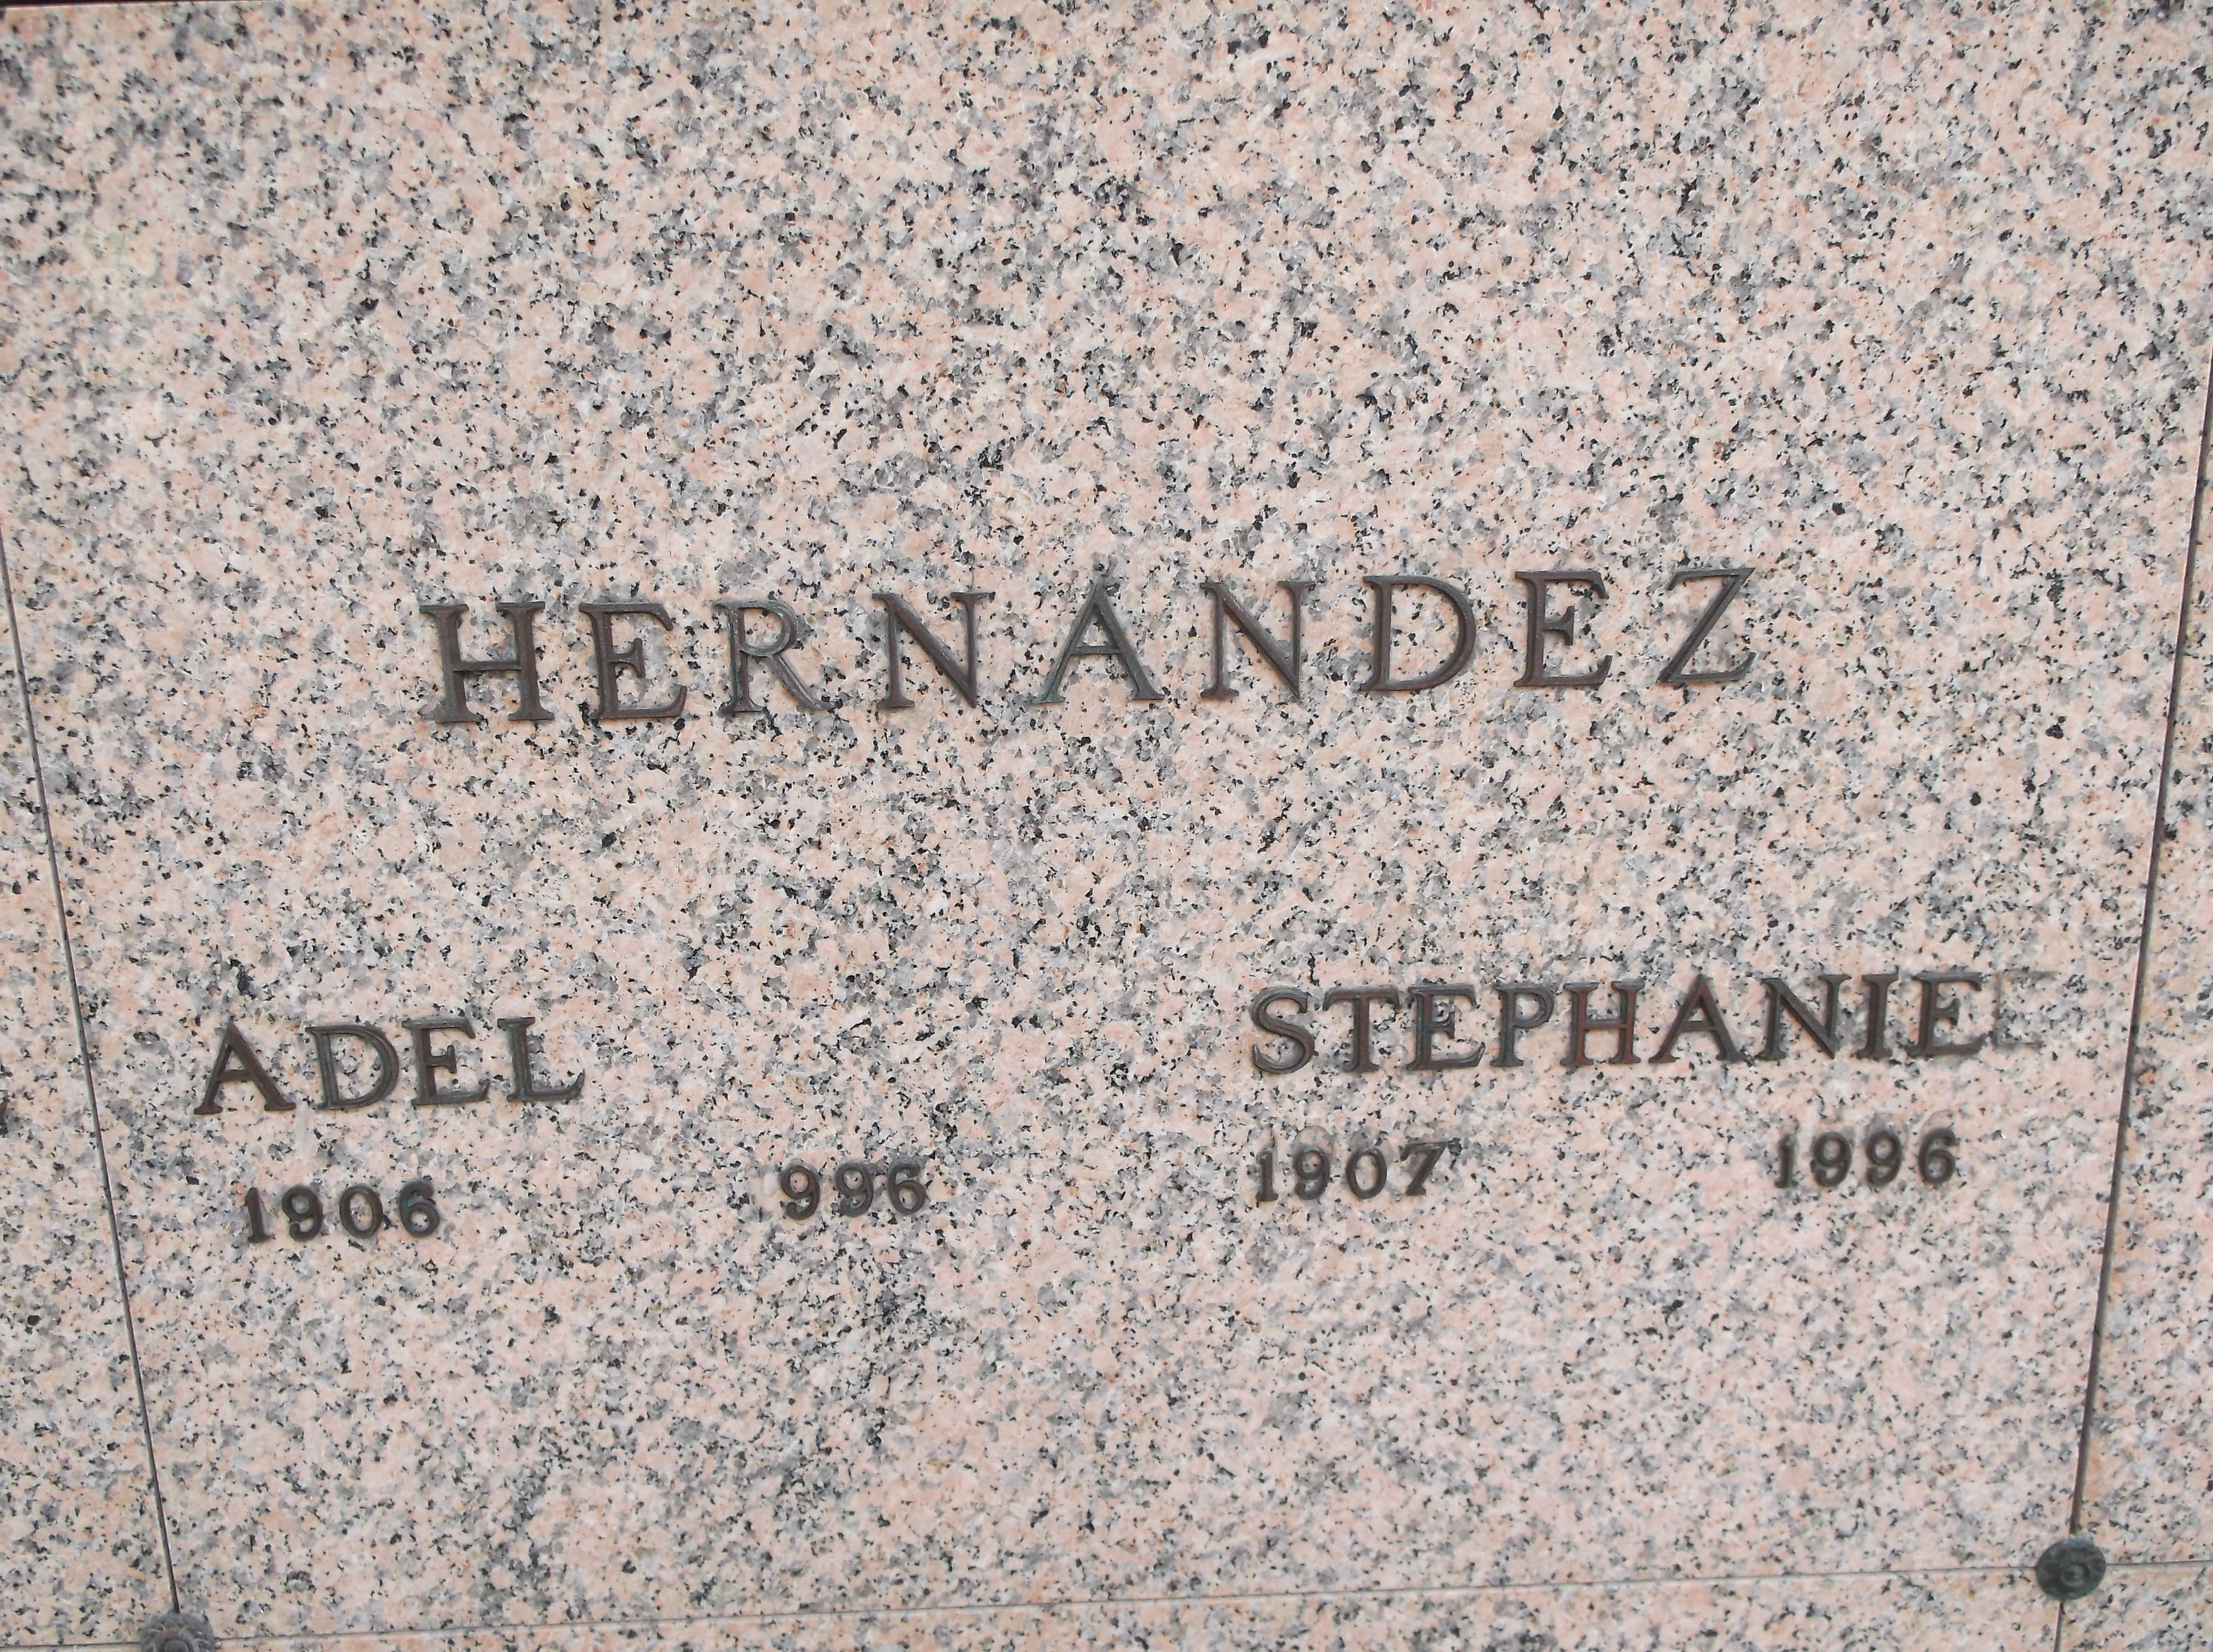 Stephanie Hernandez